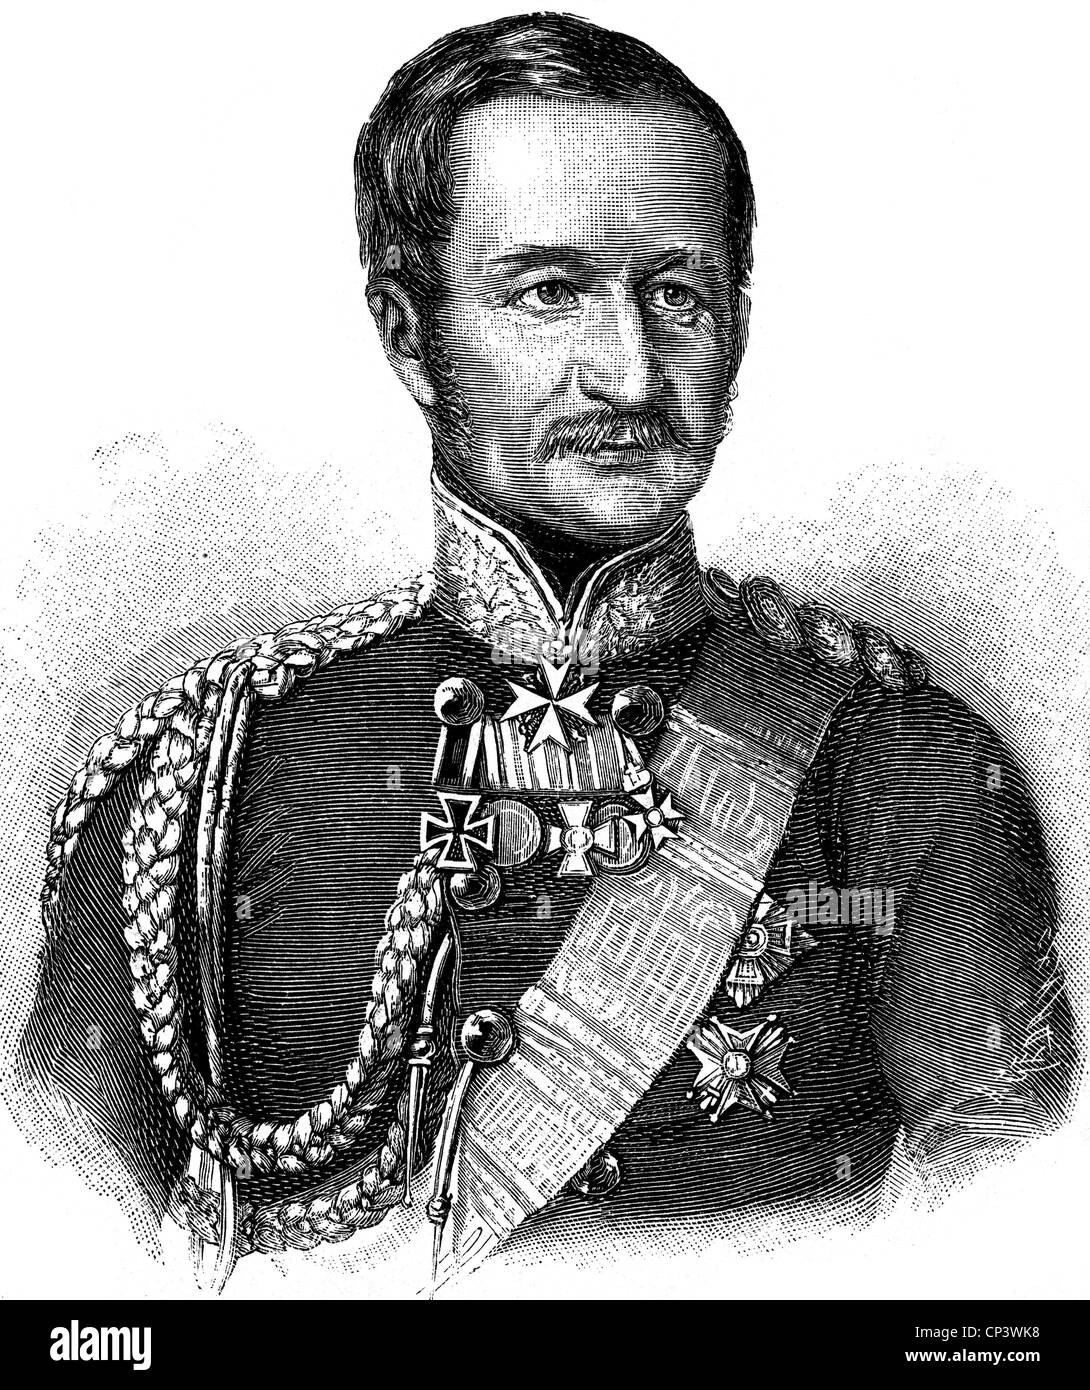 Bonin, Eduard von, 12.3.173 - 13.3.1865, preussischer General, Kriegsminister 13.1.1852 - 5.5.304 und 6.11.1858 - 27.11.1859, Porträt, Lithograph von Steckmest, ca. 1855, Stockfoto